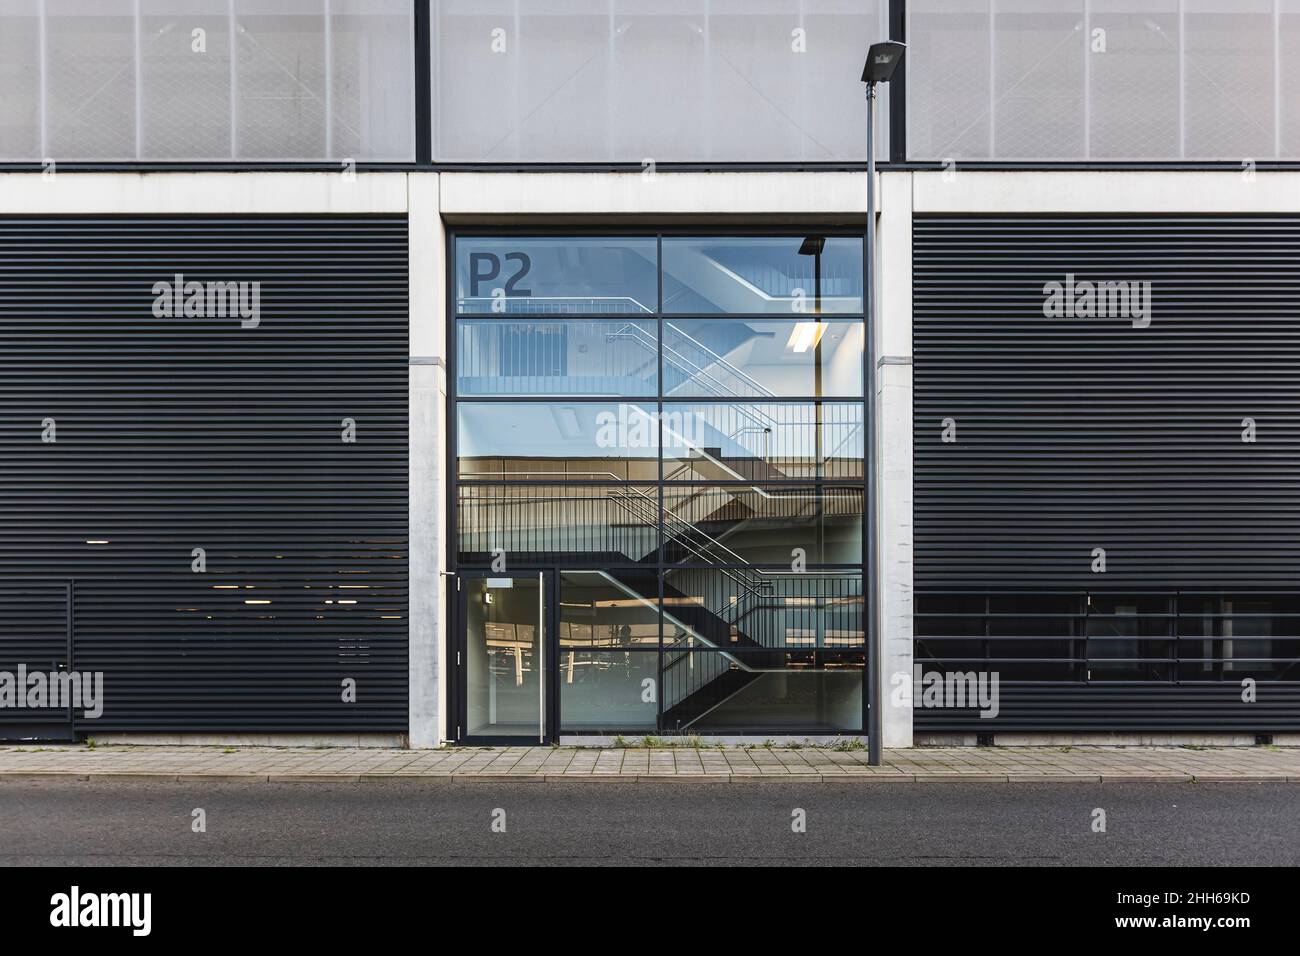 Germania, Brandeburgo, Schonefeld, facciata dell'aeroporto di Berlino Brandeburgo con scala visibile Foto Stock